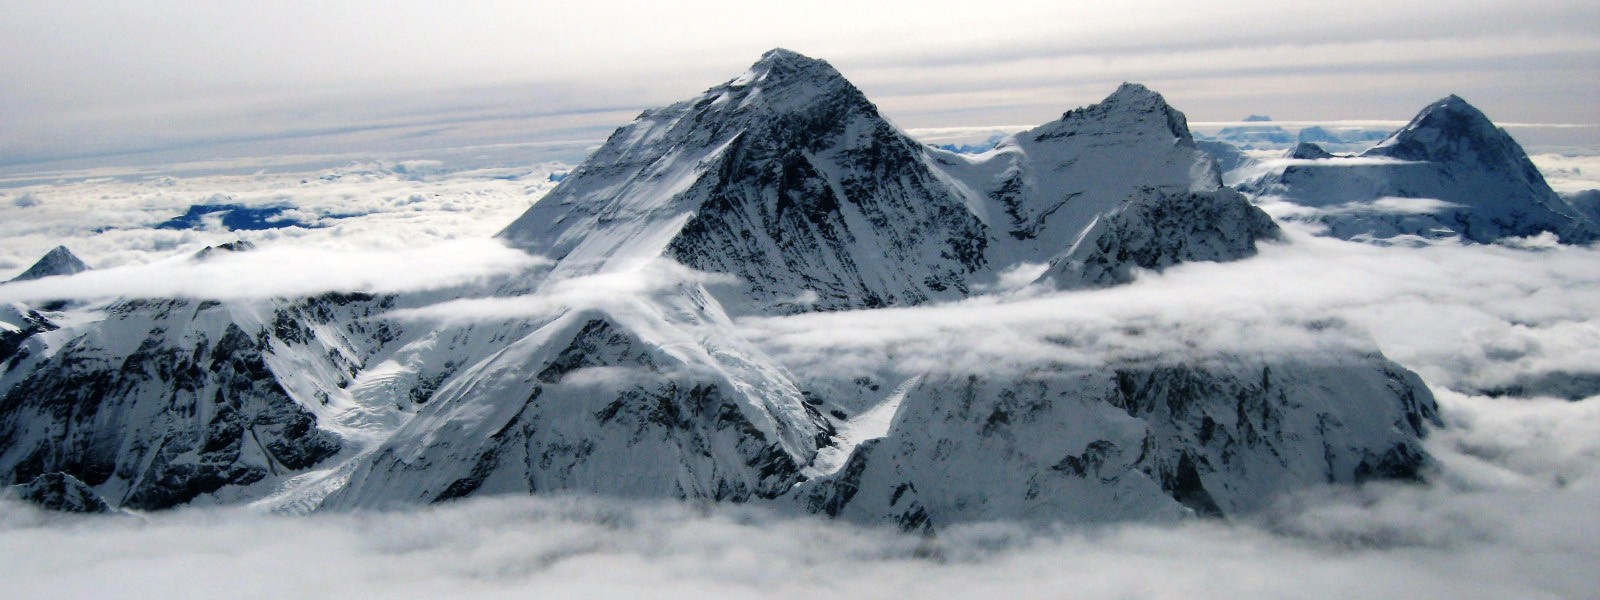 Mt. Everest 8848m. views 